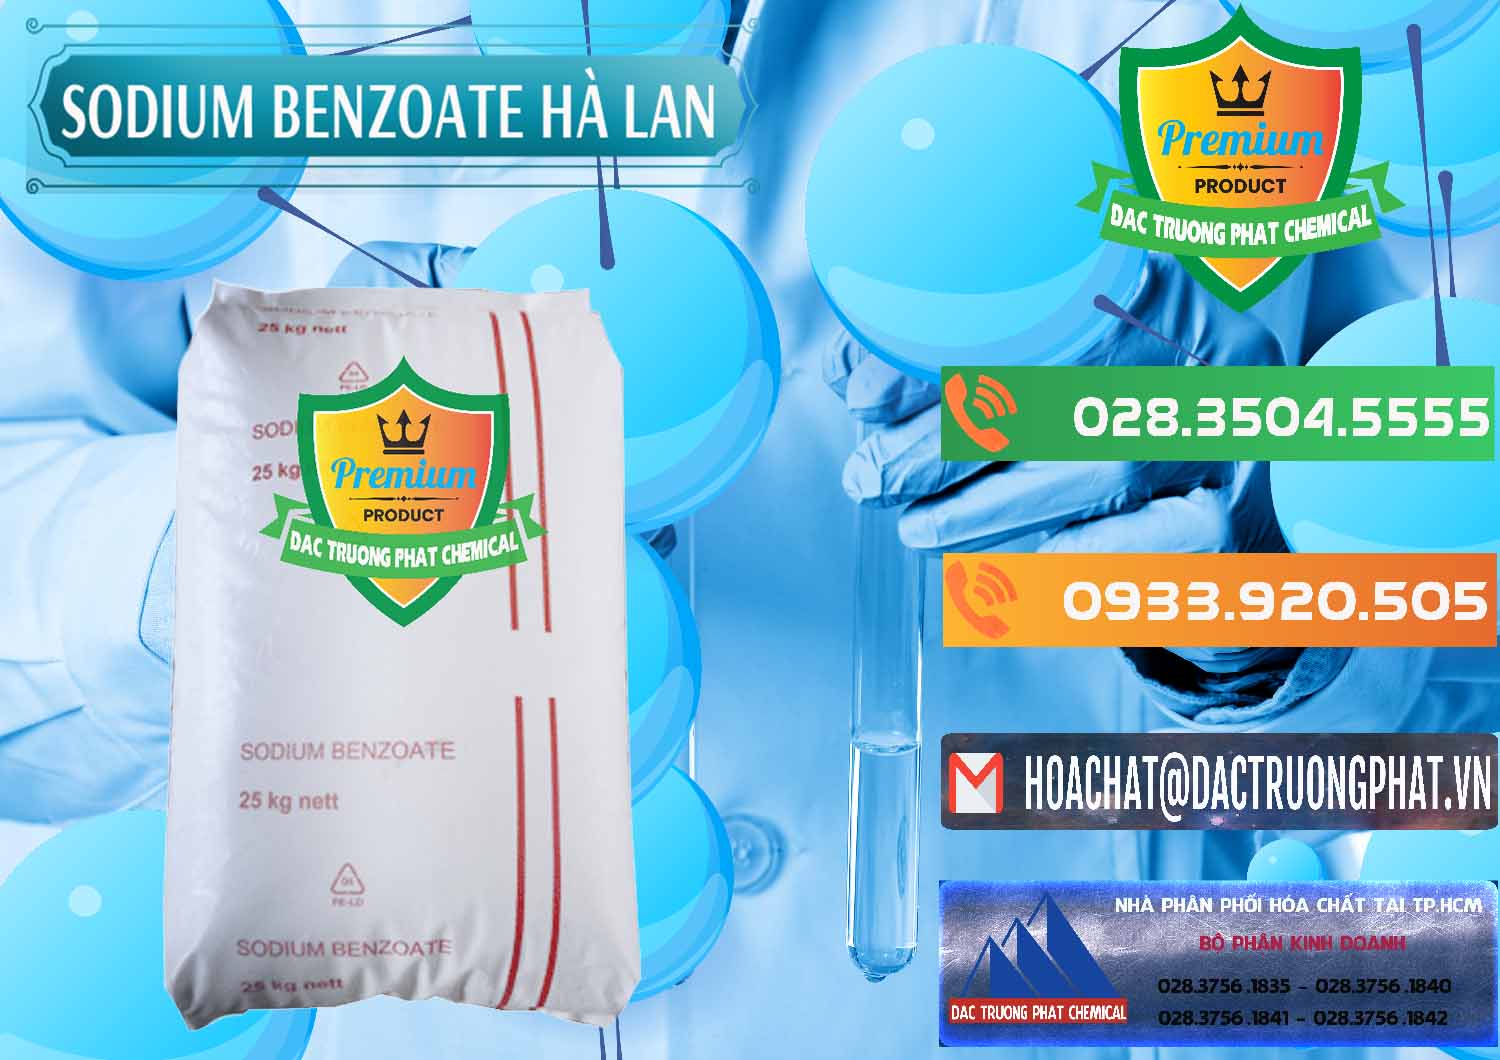 Đơn vị nhập khẩu và bán Sodium Benzoate - Mốc Bột Chữ Cam Hà Lan Netherlands - 0360 - Đơn vị phân phối và bán hóa chất tại TP.HCM - hoachatxulynuoc.com.vn